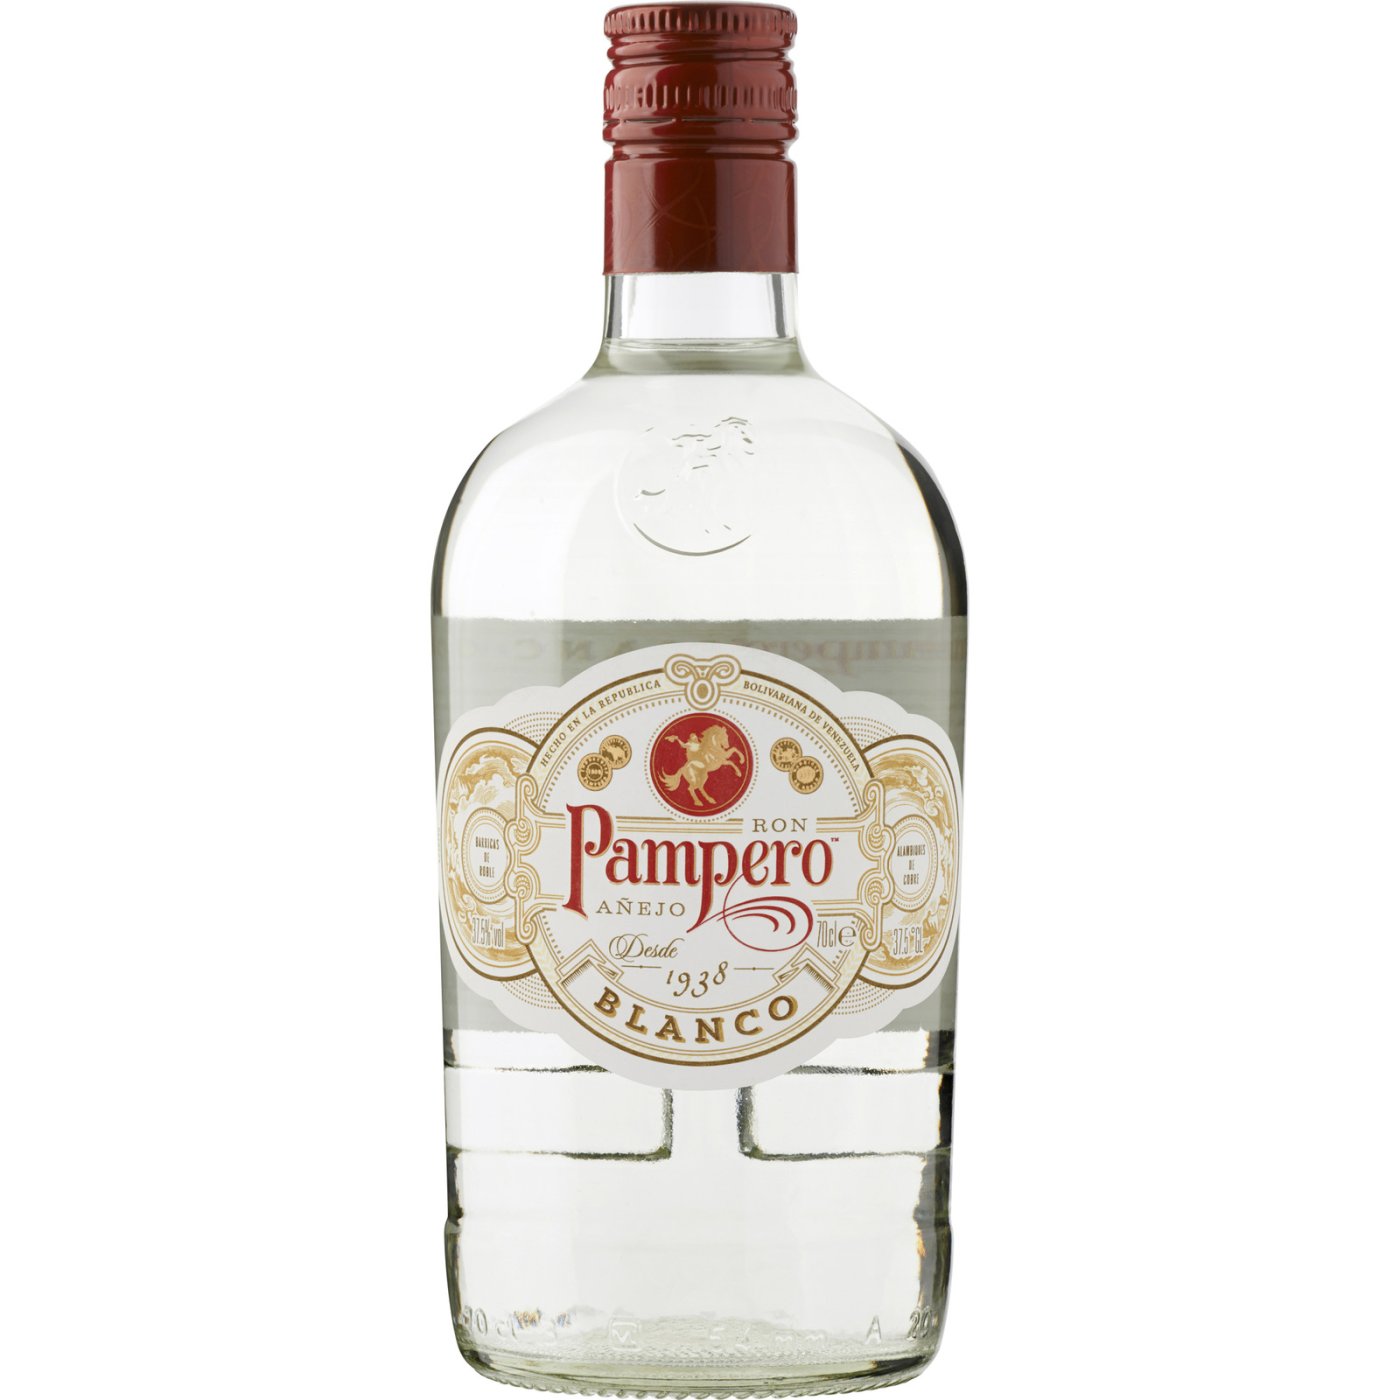 Pampero - Blanco 1 liter